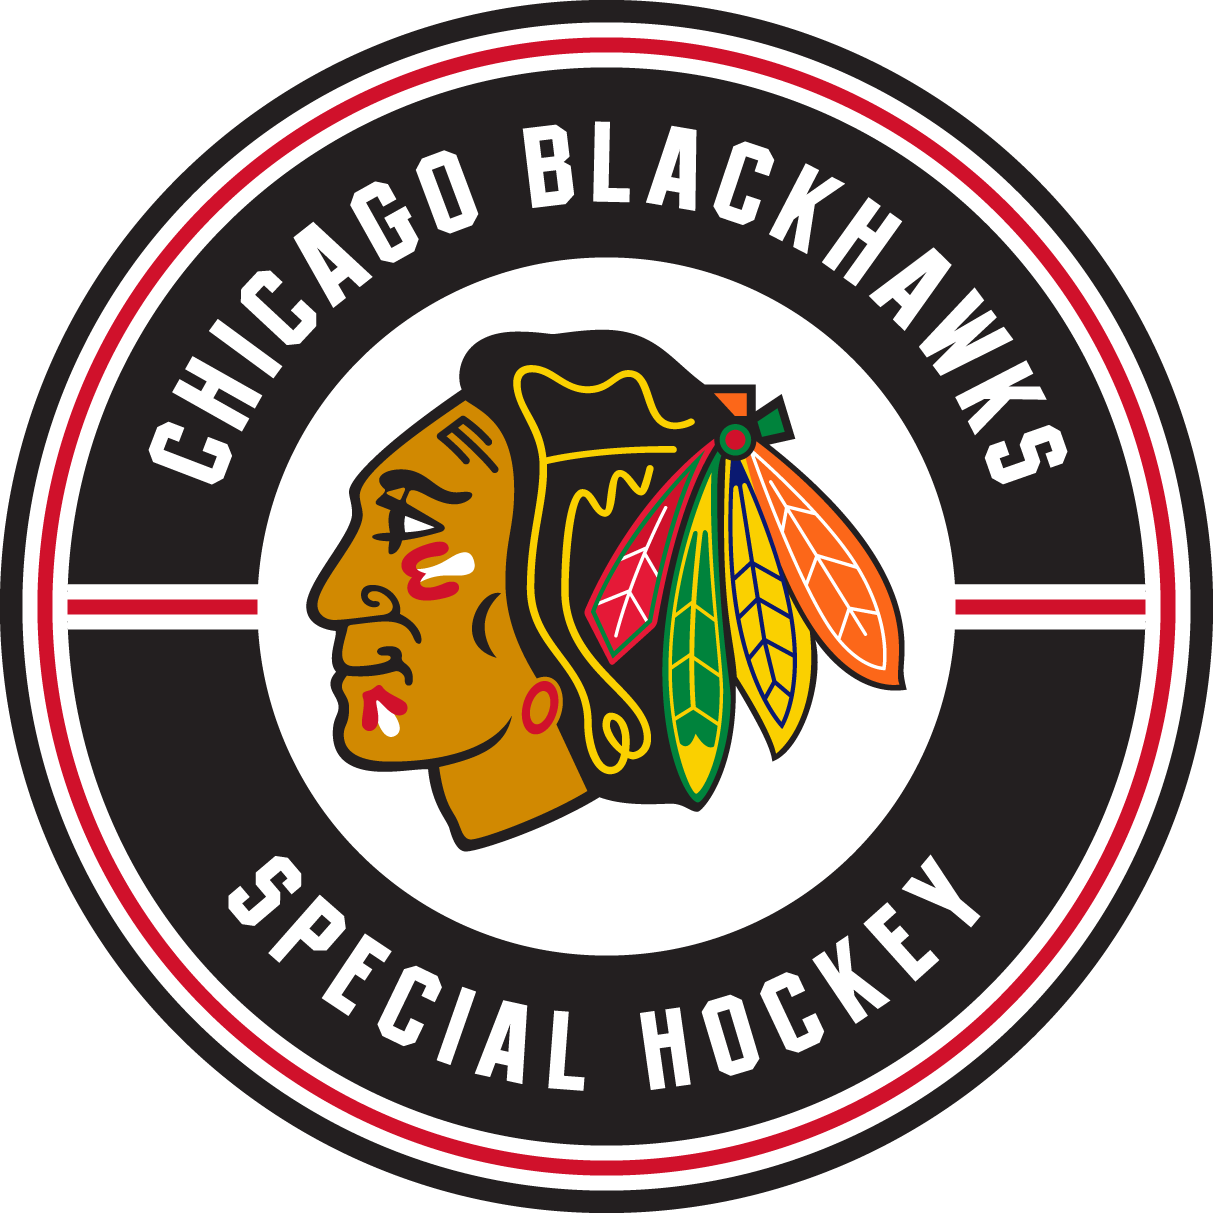 Chicago Blackhawks Background PNG Image